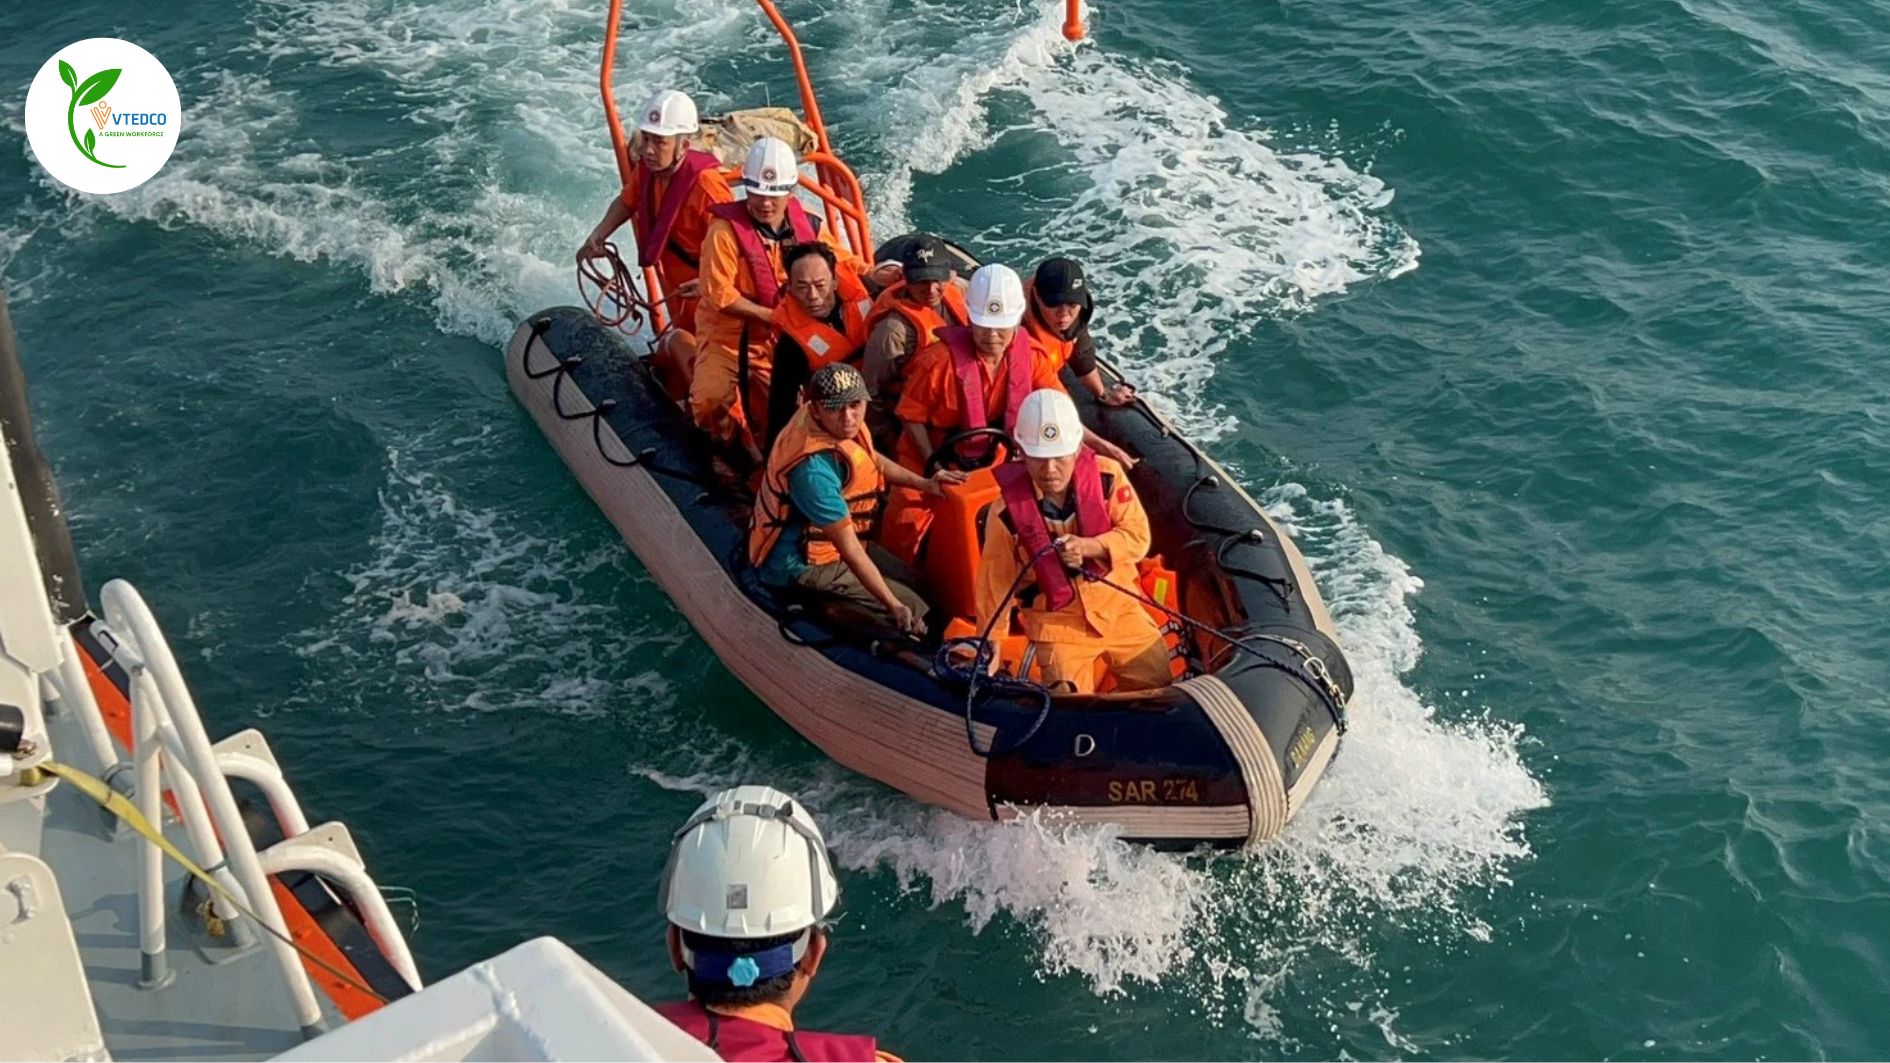 Cứu gần 270 người trên biển trong 3 tháng